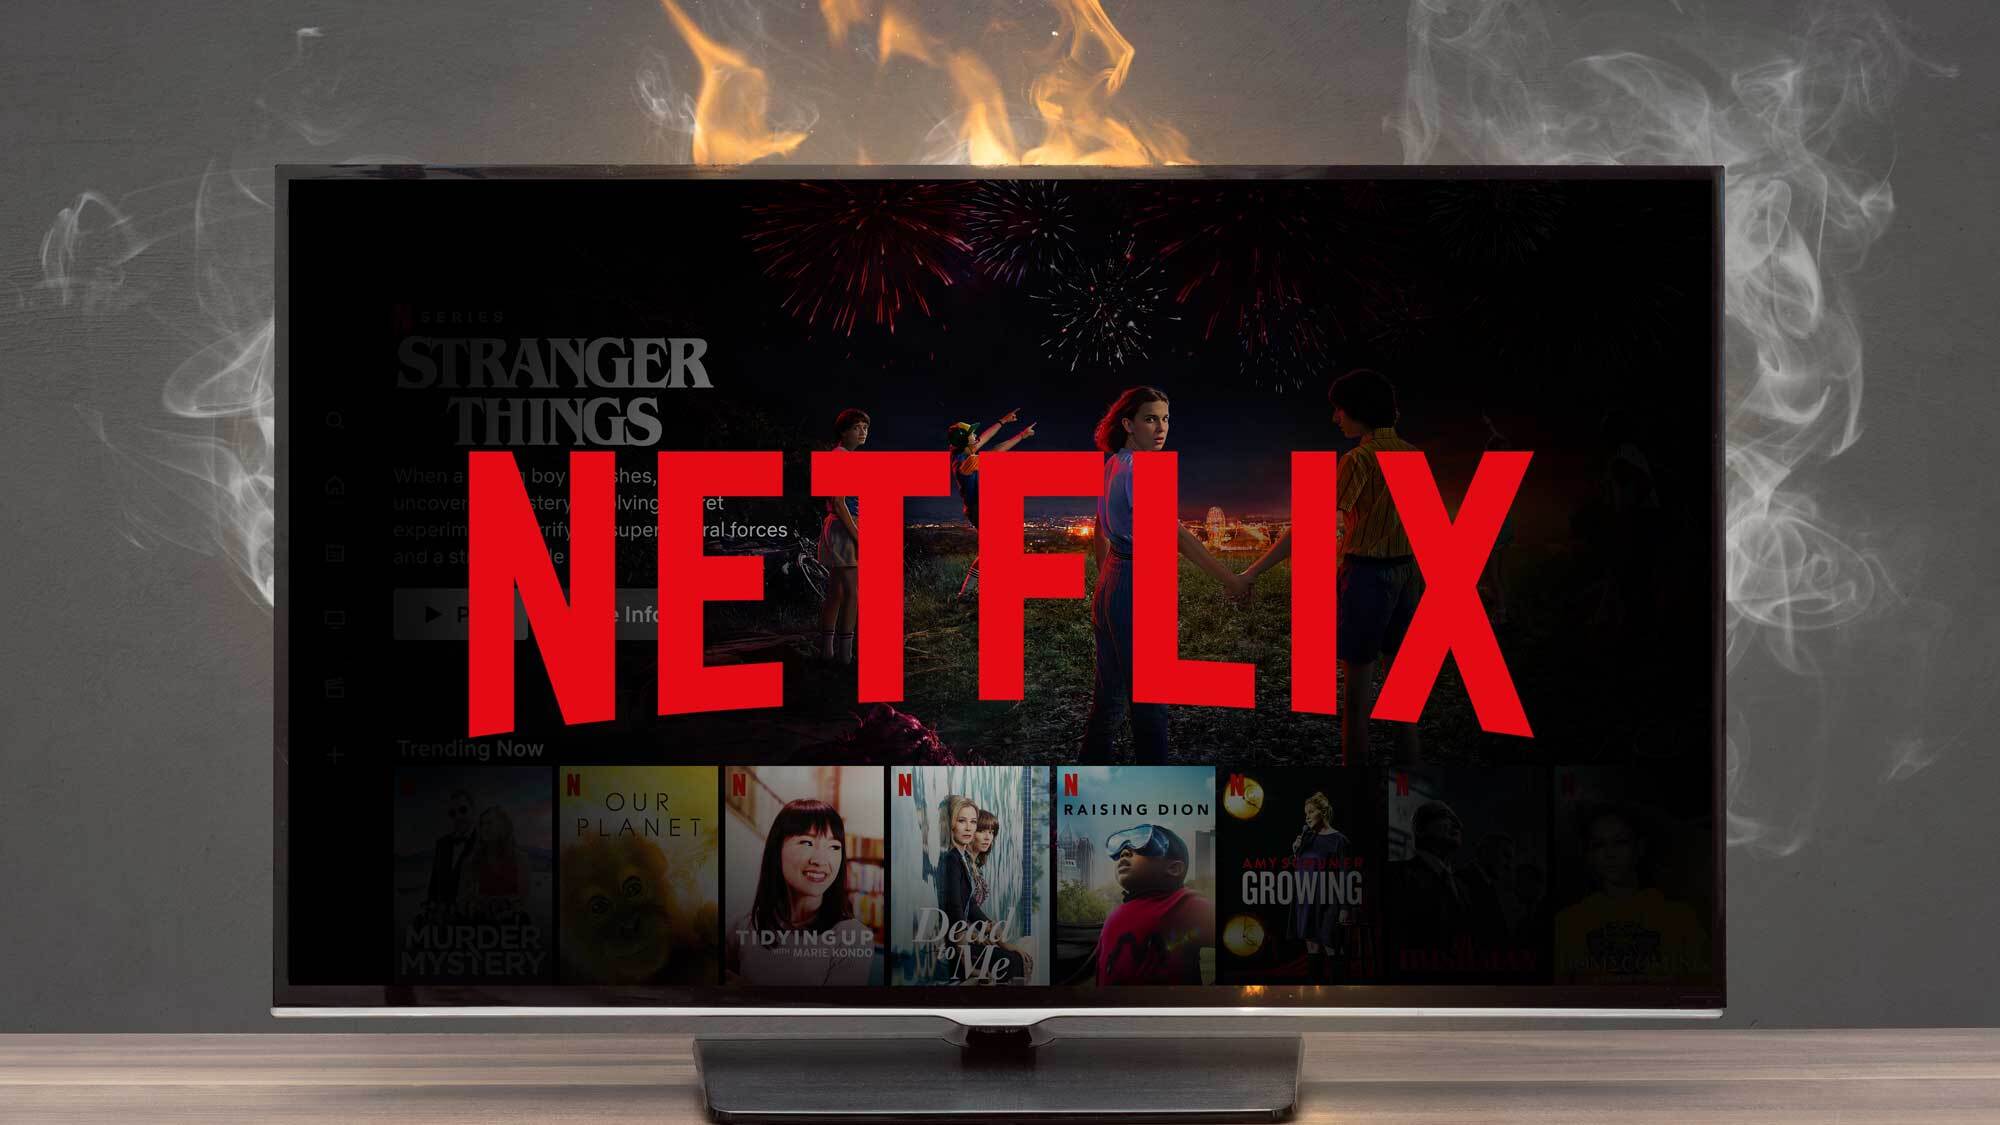 اشتعلت النيران في جهاز تلفزيون يحمل شعار Netflix وعرضًا فنيًا